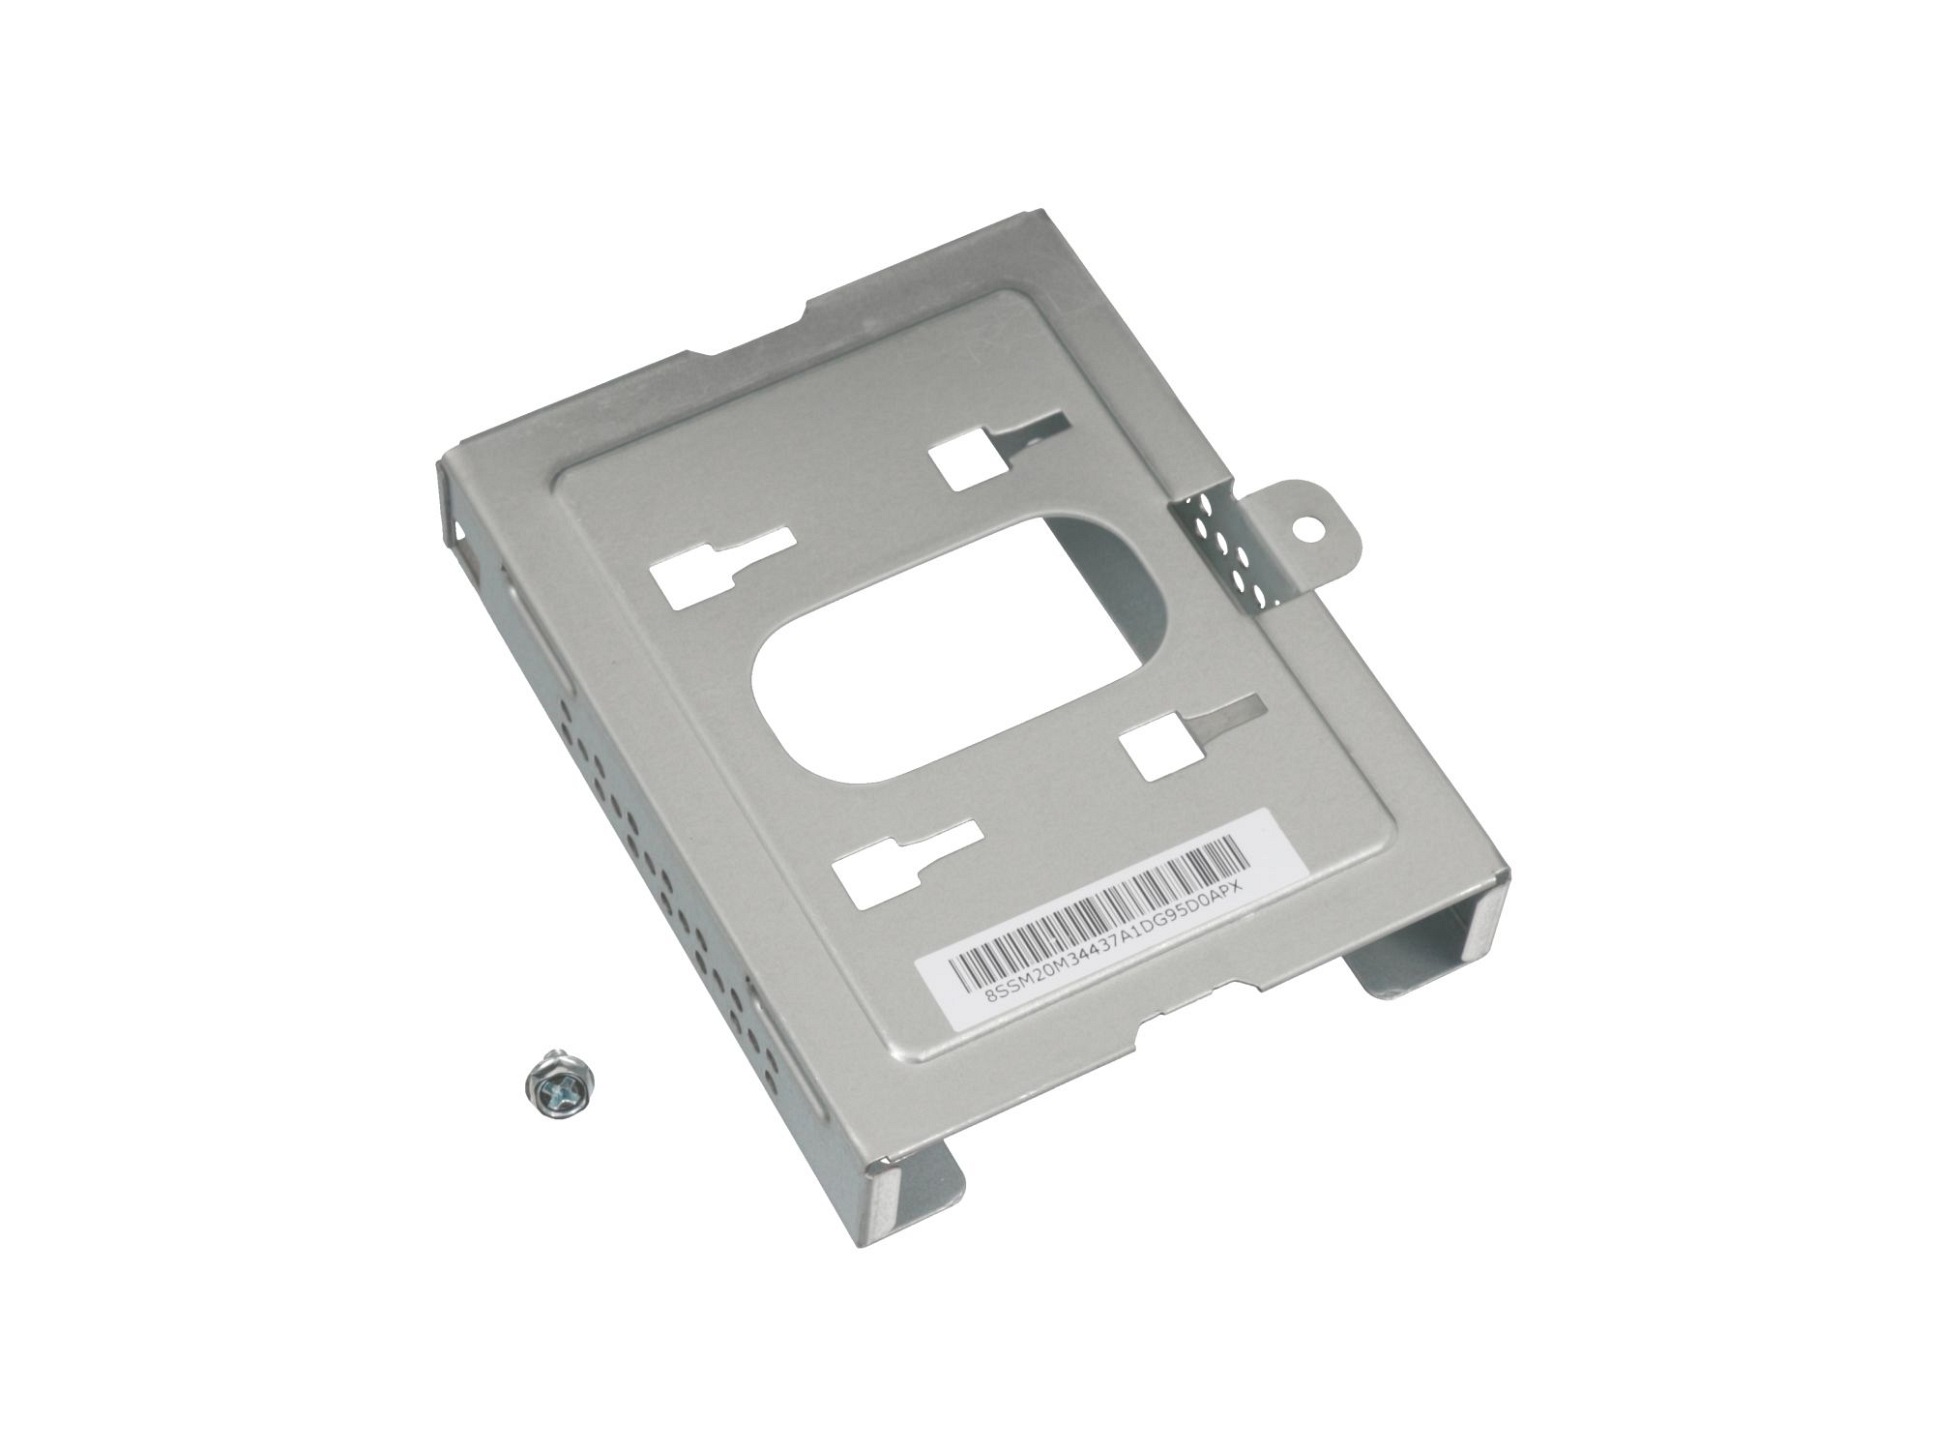 Festplatten-Einbaurahmen für den 1. Festplatten Schacht Original für Lenovo ThinkCentre M920s (10SJ/10SK)